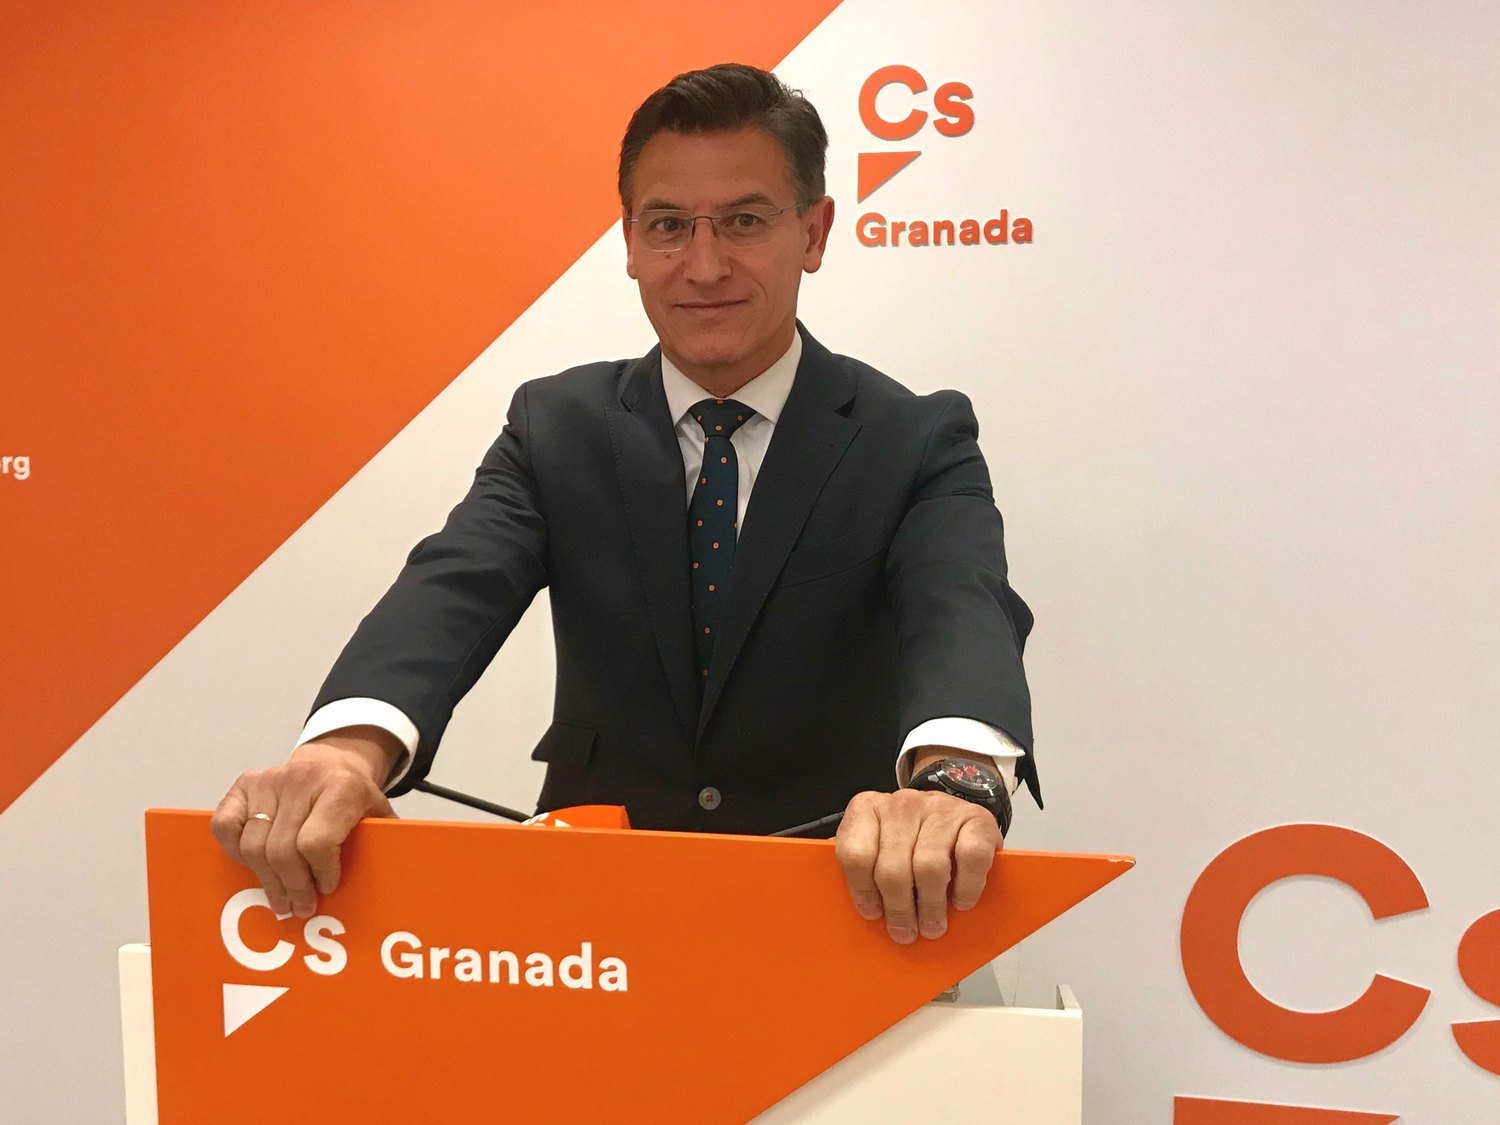 ¿Moción de censura en Granada? El PP maniobra para echar a Luis Salvador (Cs) de la alcaldía